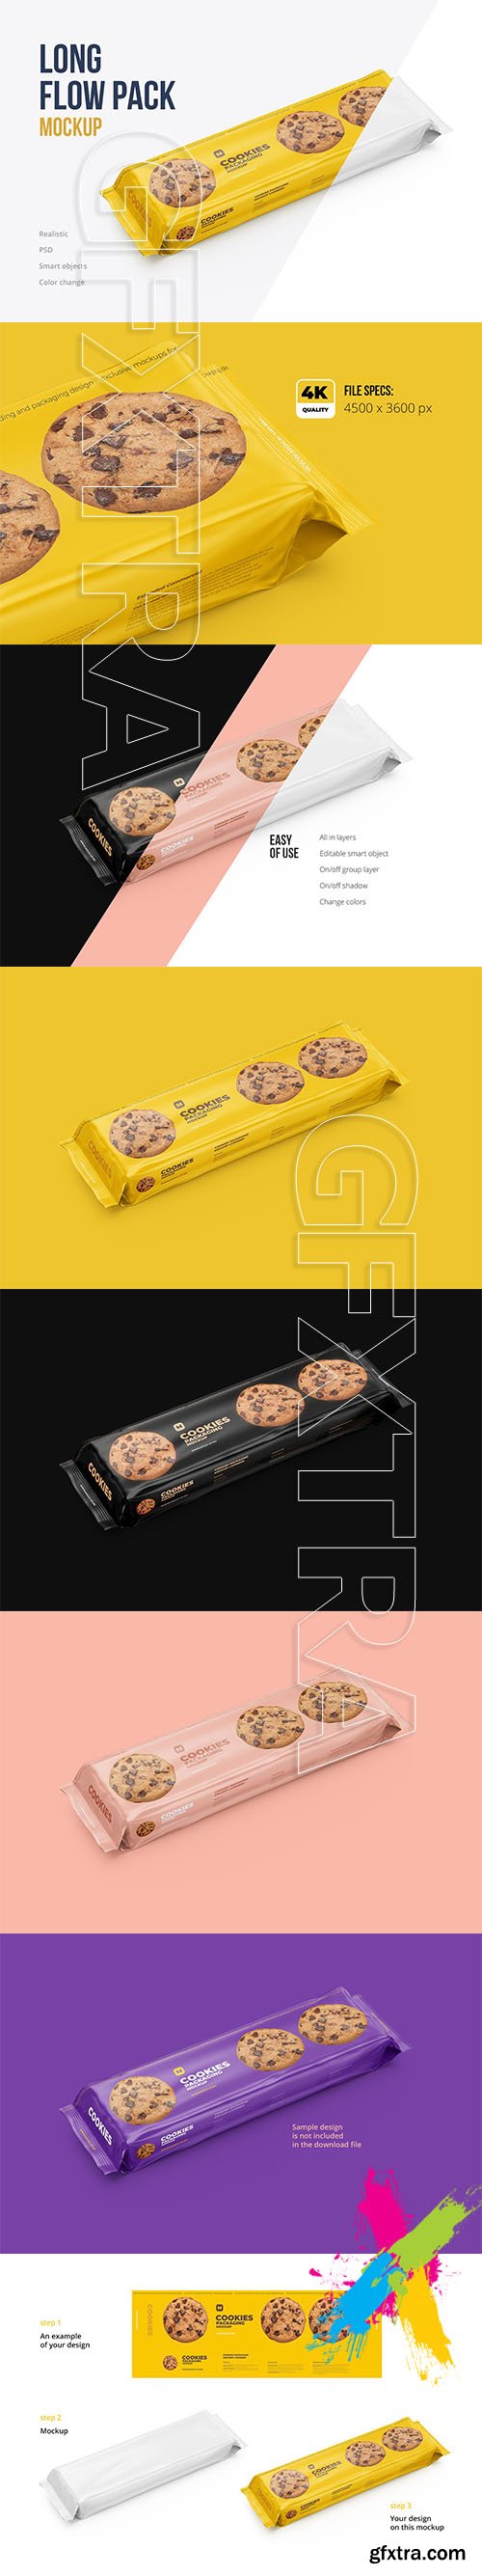 CreativeMarket - Long Flow Pack / Cookies Mockup 4781744